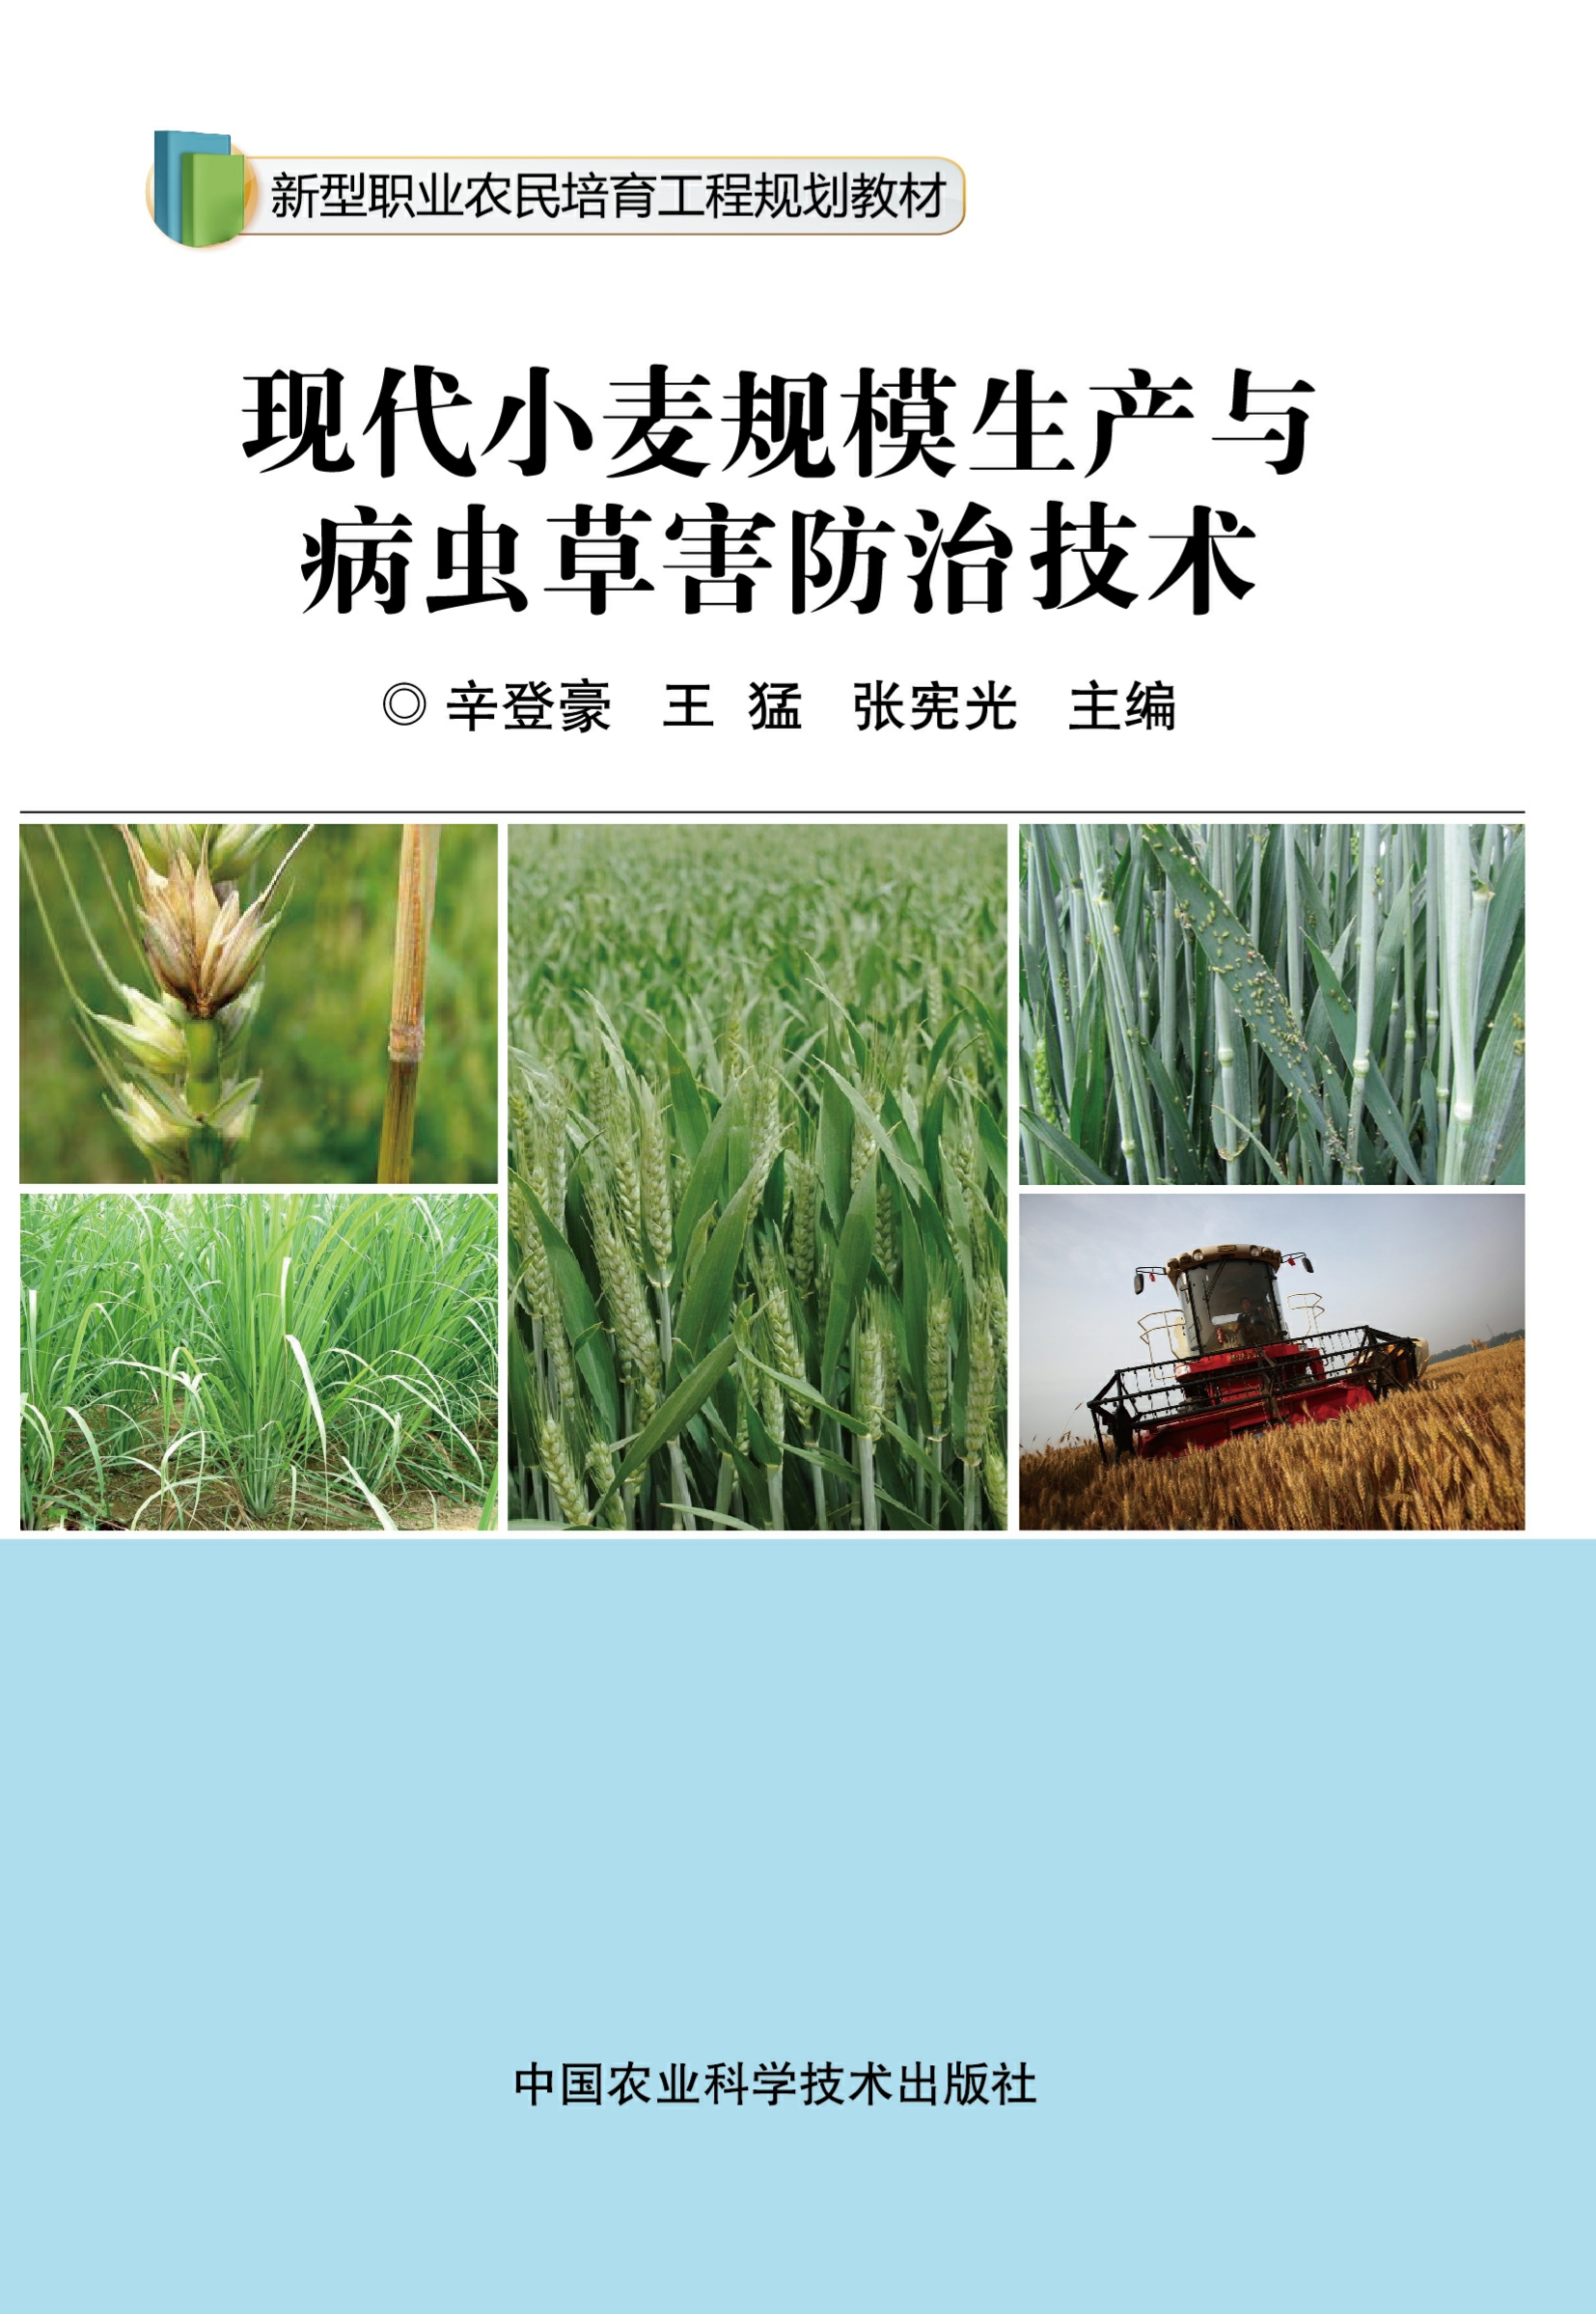 现代小麦规模生产与病虫草害防治技术